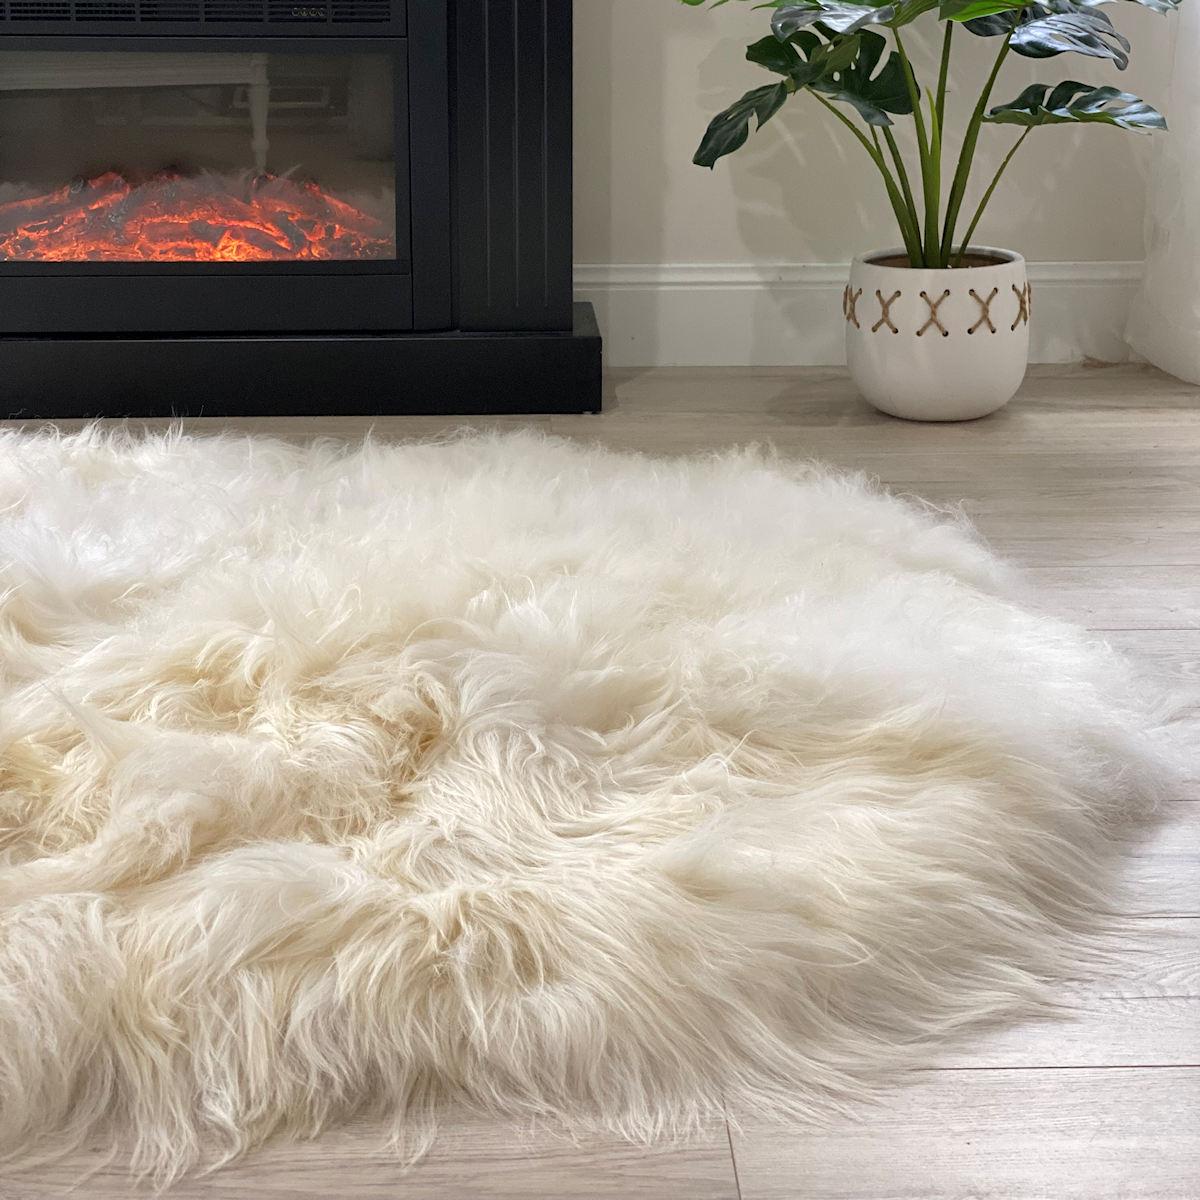 Genießen Sie die üppige und gemütliche Textur dieses ovalen Zottelteppichs, der Ihr Zuhause mit dem natürlichen Luxus eines echten Schaffells bereichert. Dieser isländische Schafsfellteppich ist der perfekte Akzent, um einem Interieur Charme und